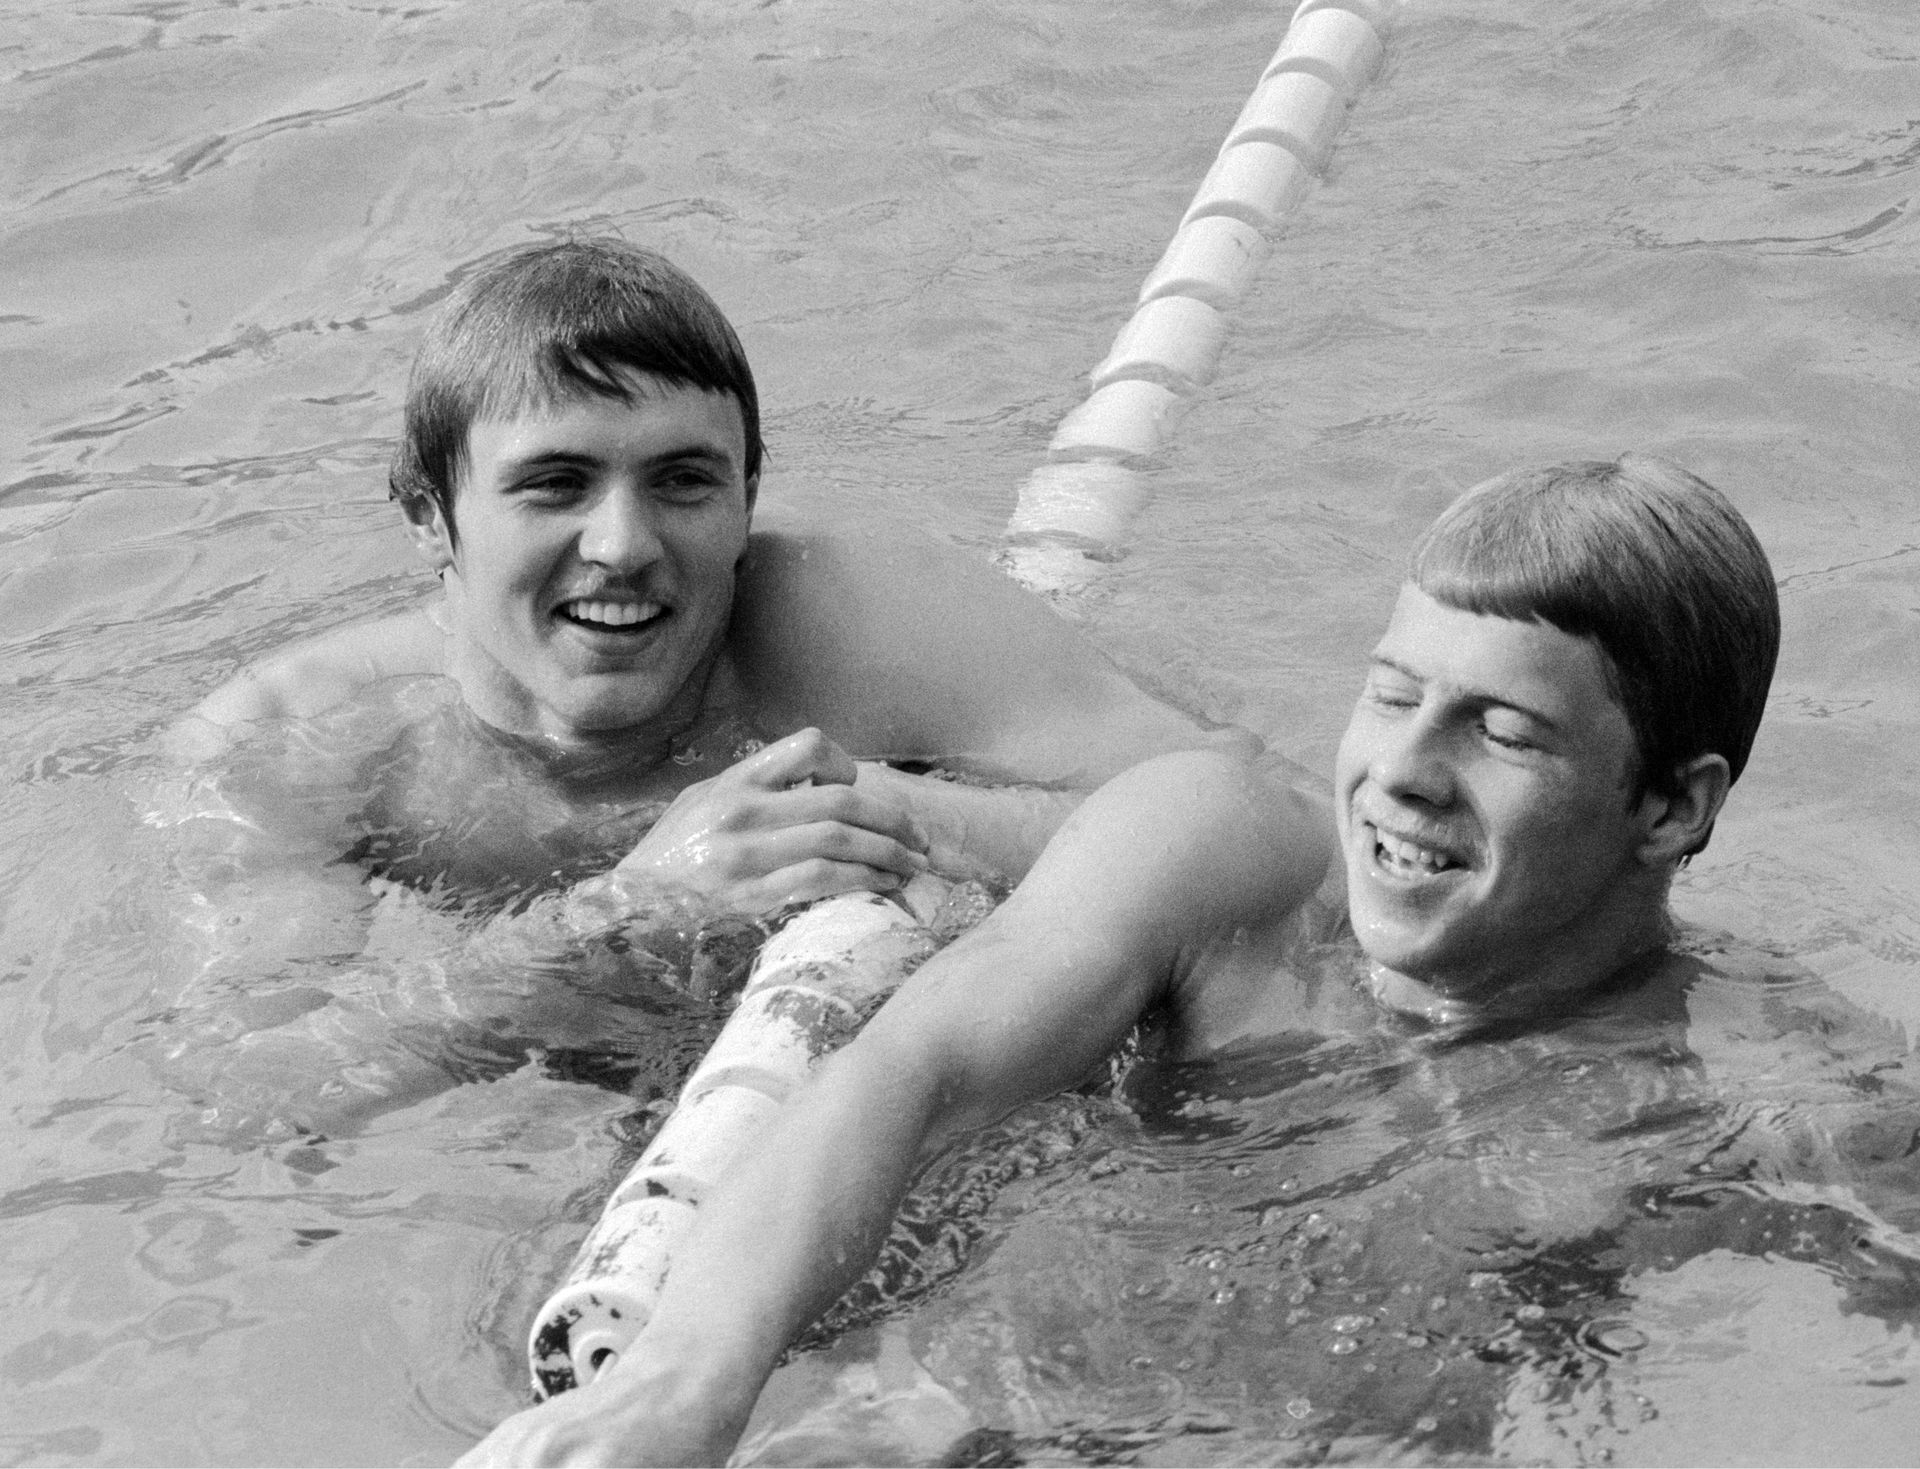 Kép az 1974-es országos bajnokságról. Az ekkor már világbajnok Hargitay András mellett a mai szövetségi kapitány, Sós Caba (Fotó: MTI/Kovács Gyula)